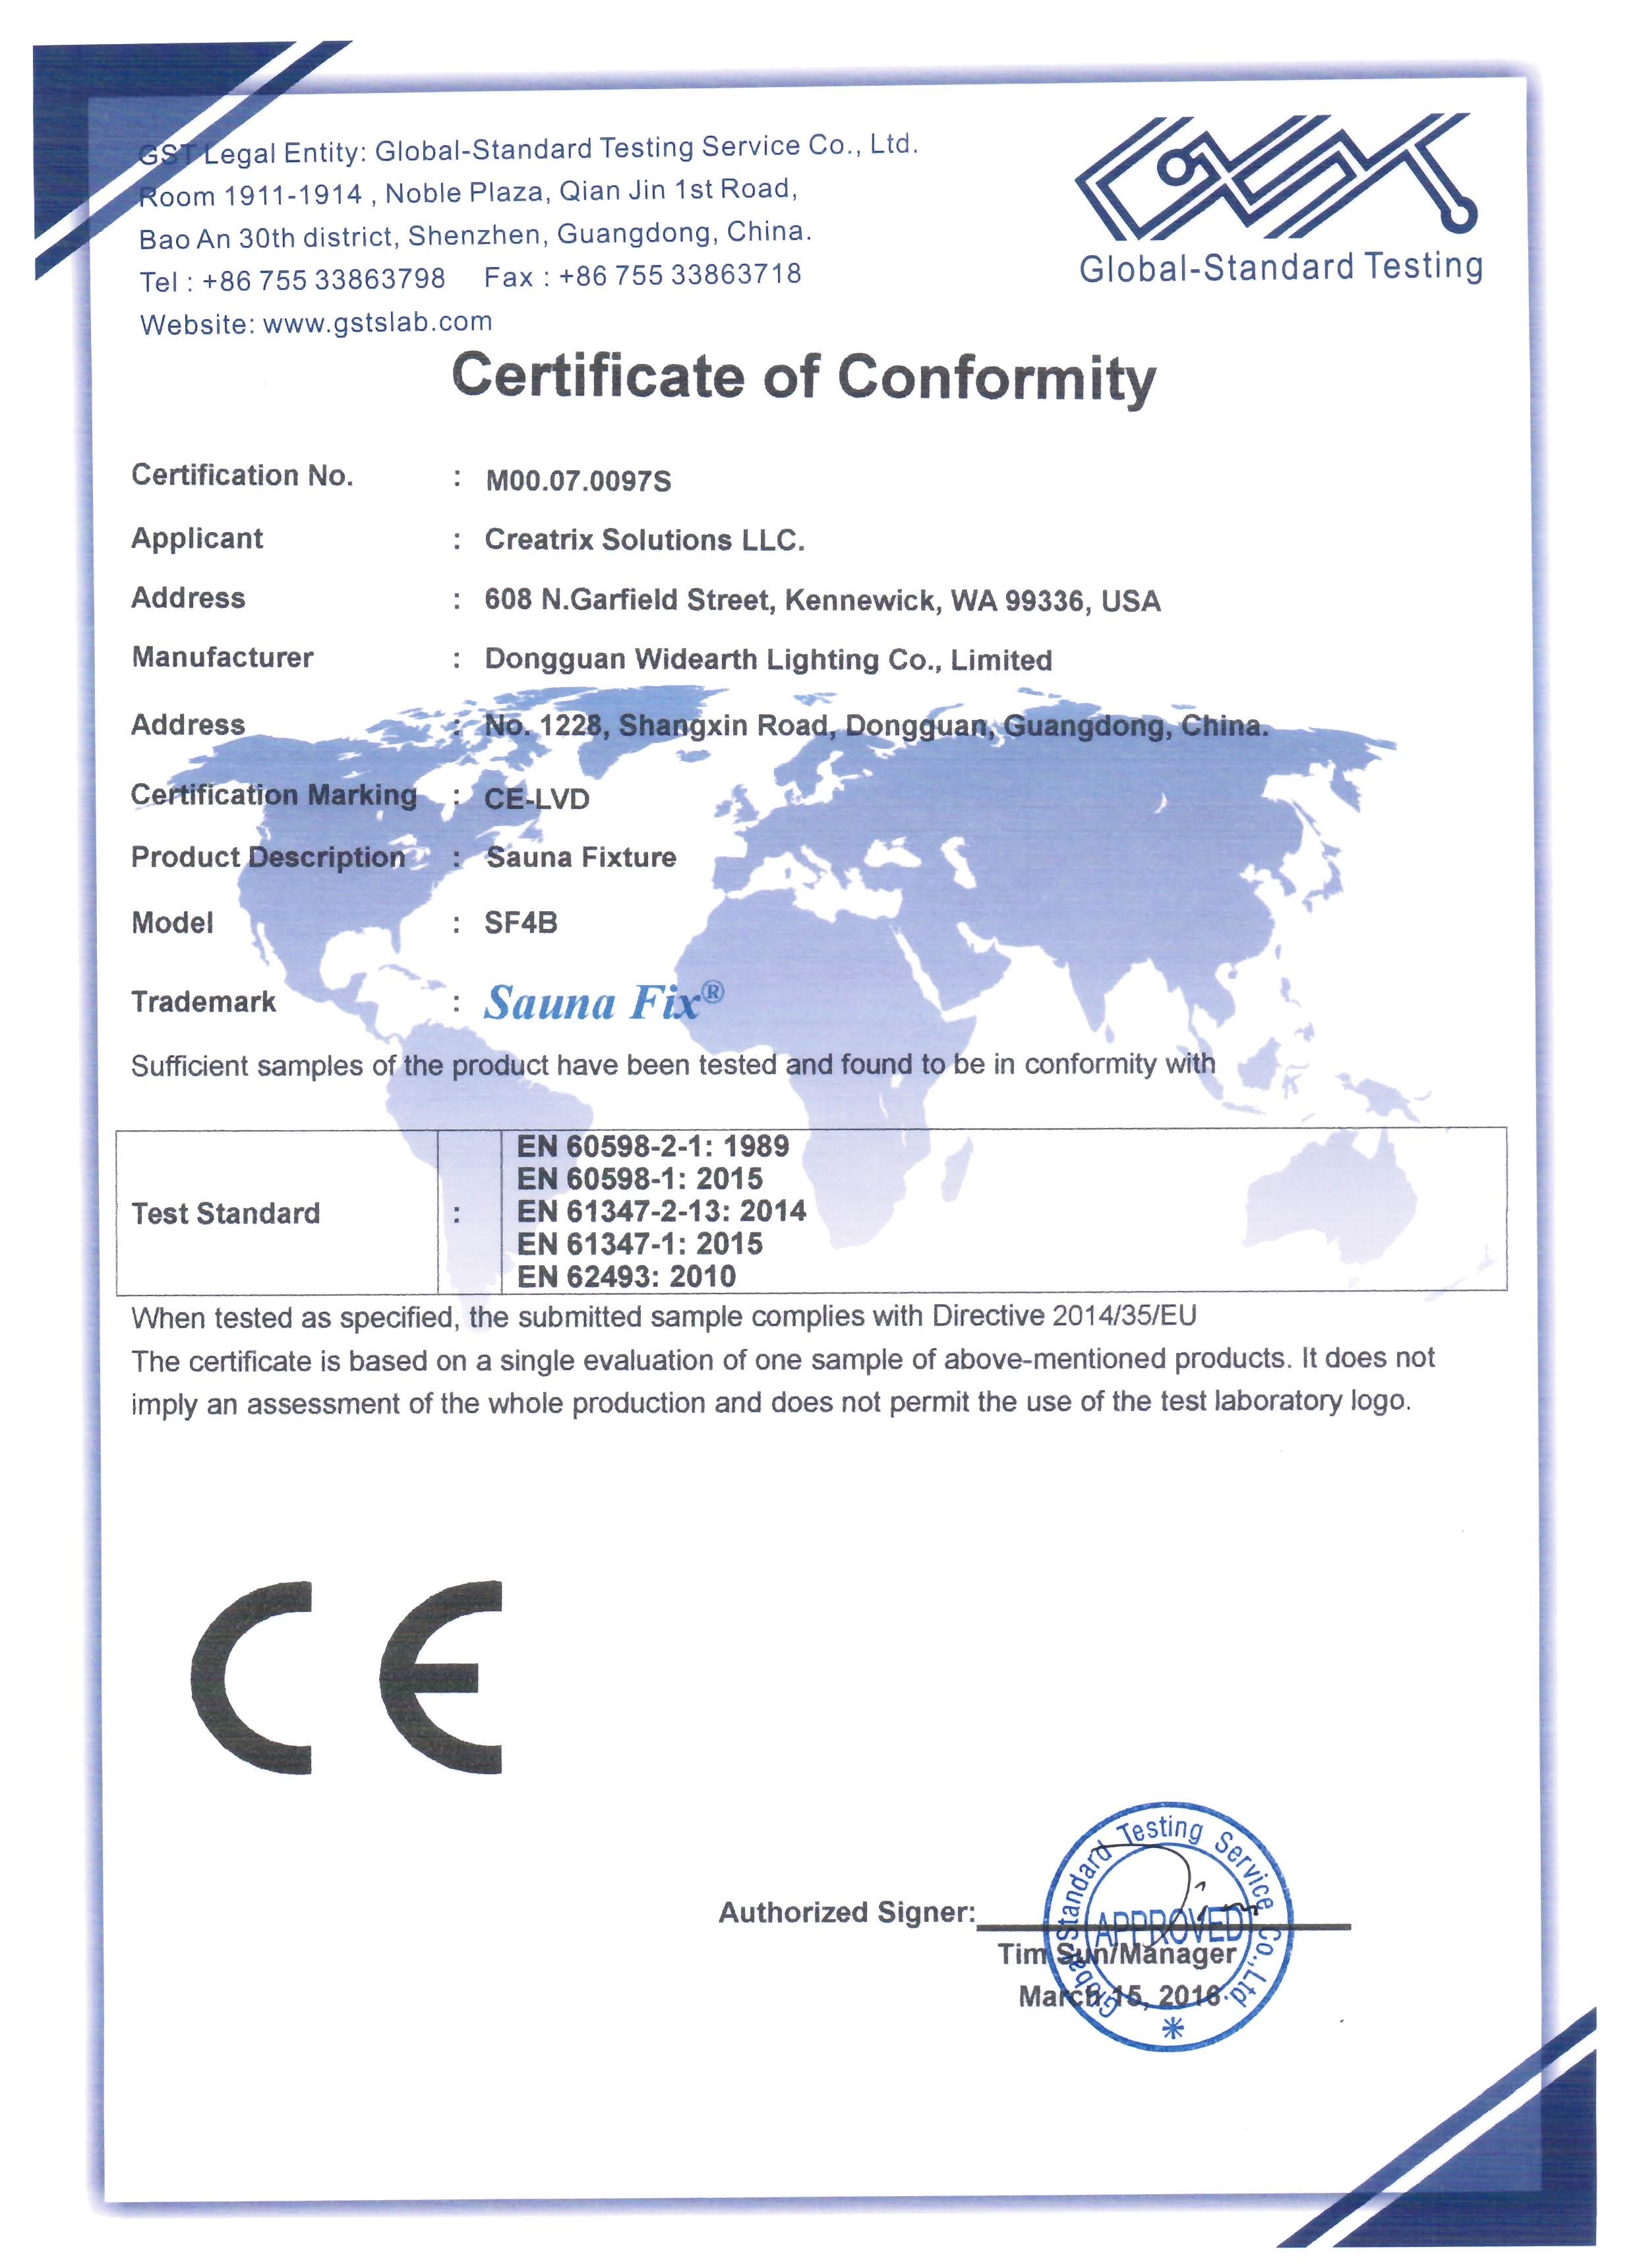 Sauna Fix EU LVD Certificate